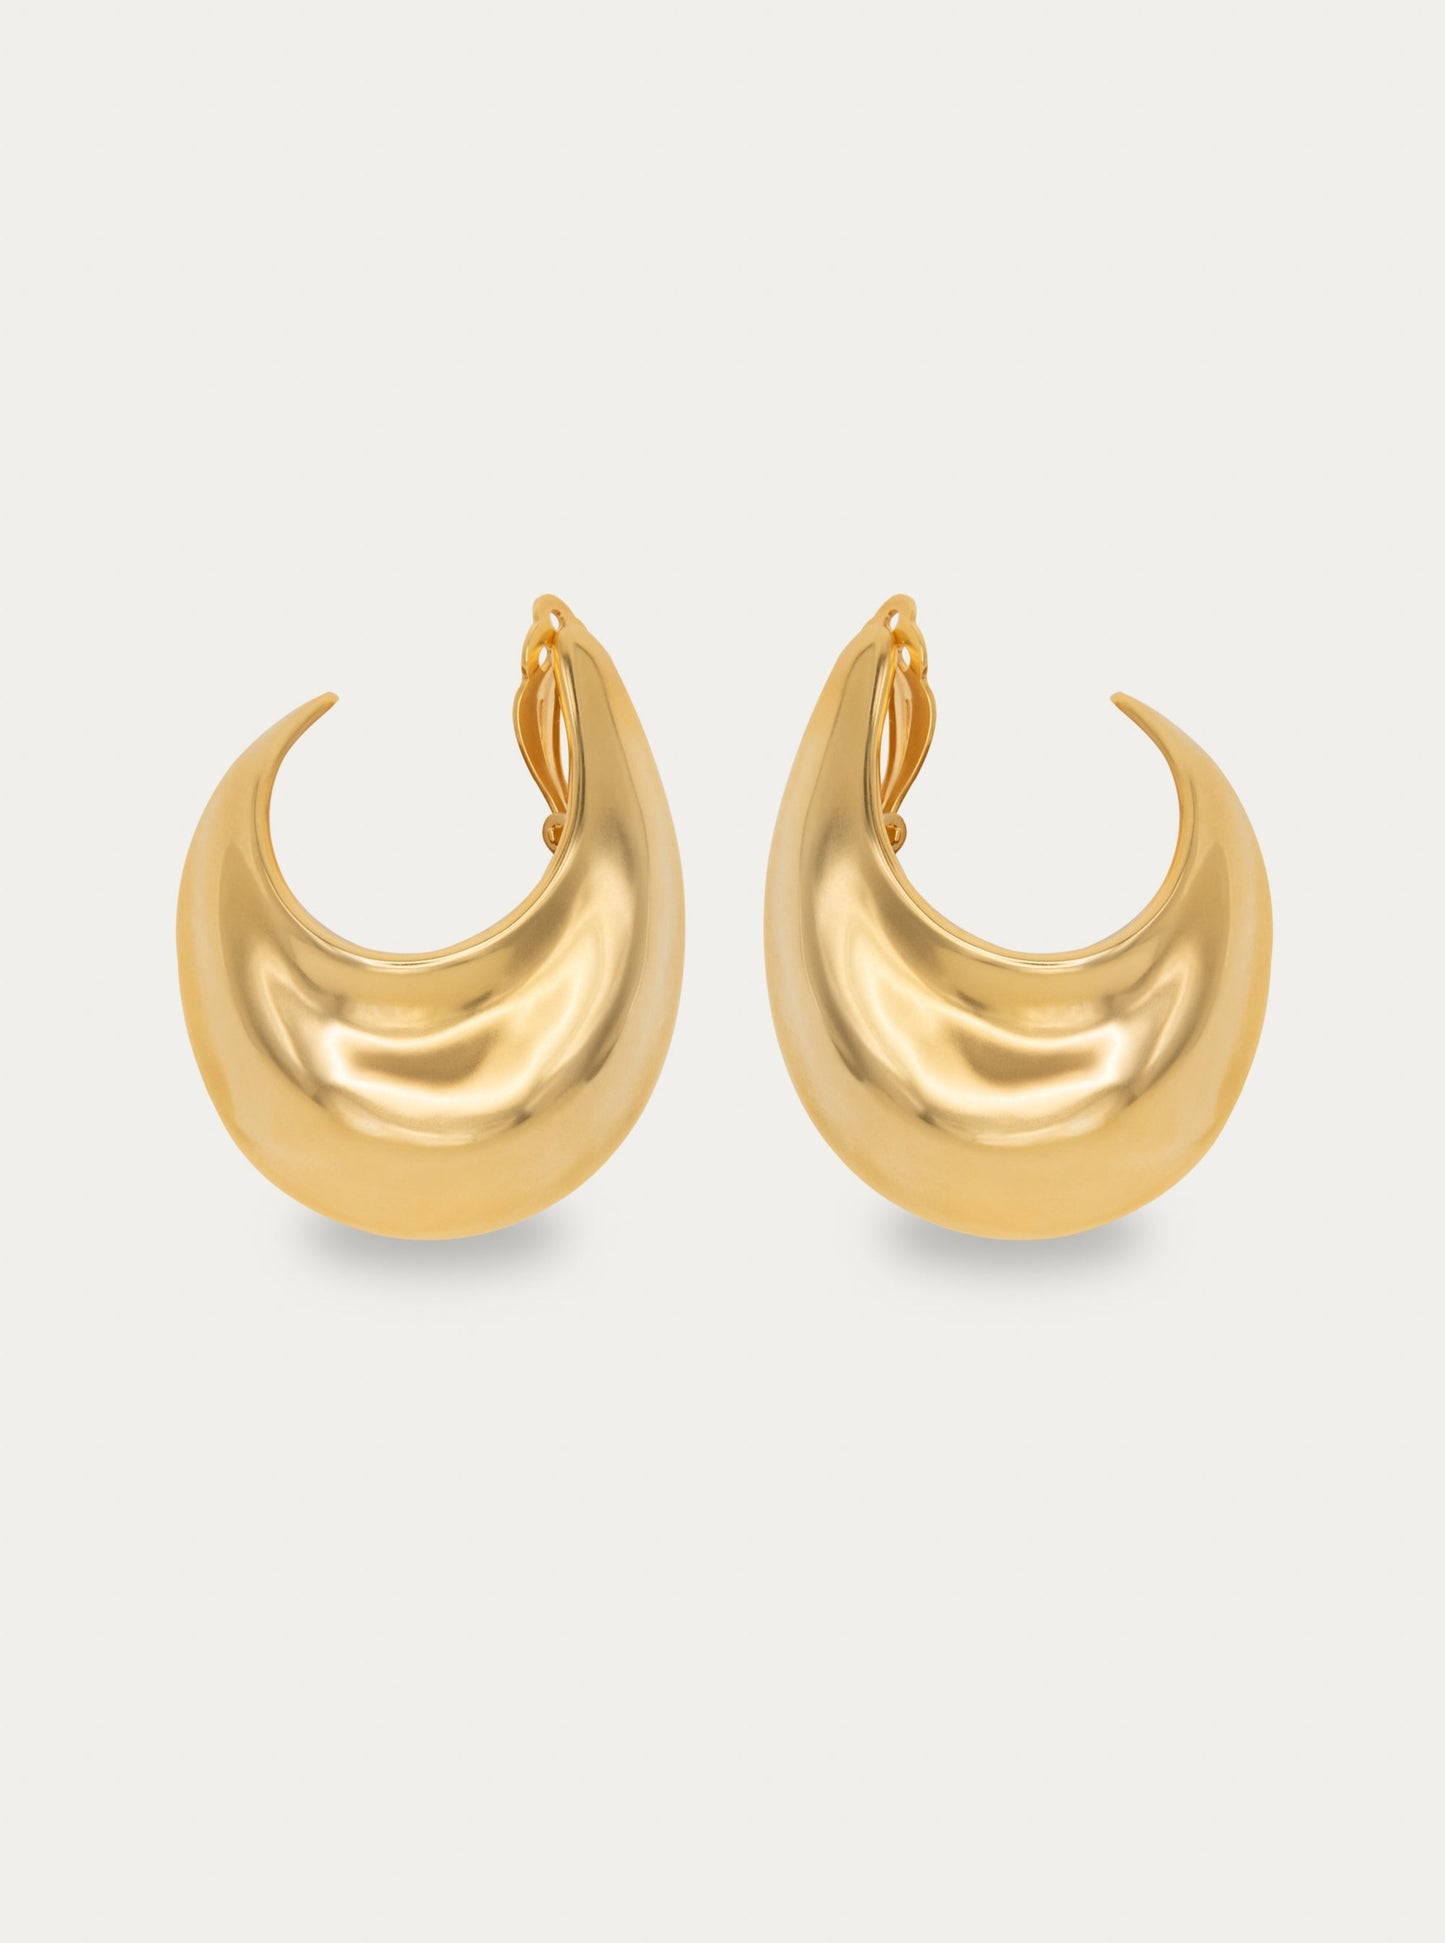 The Sabine Hoop Earrings